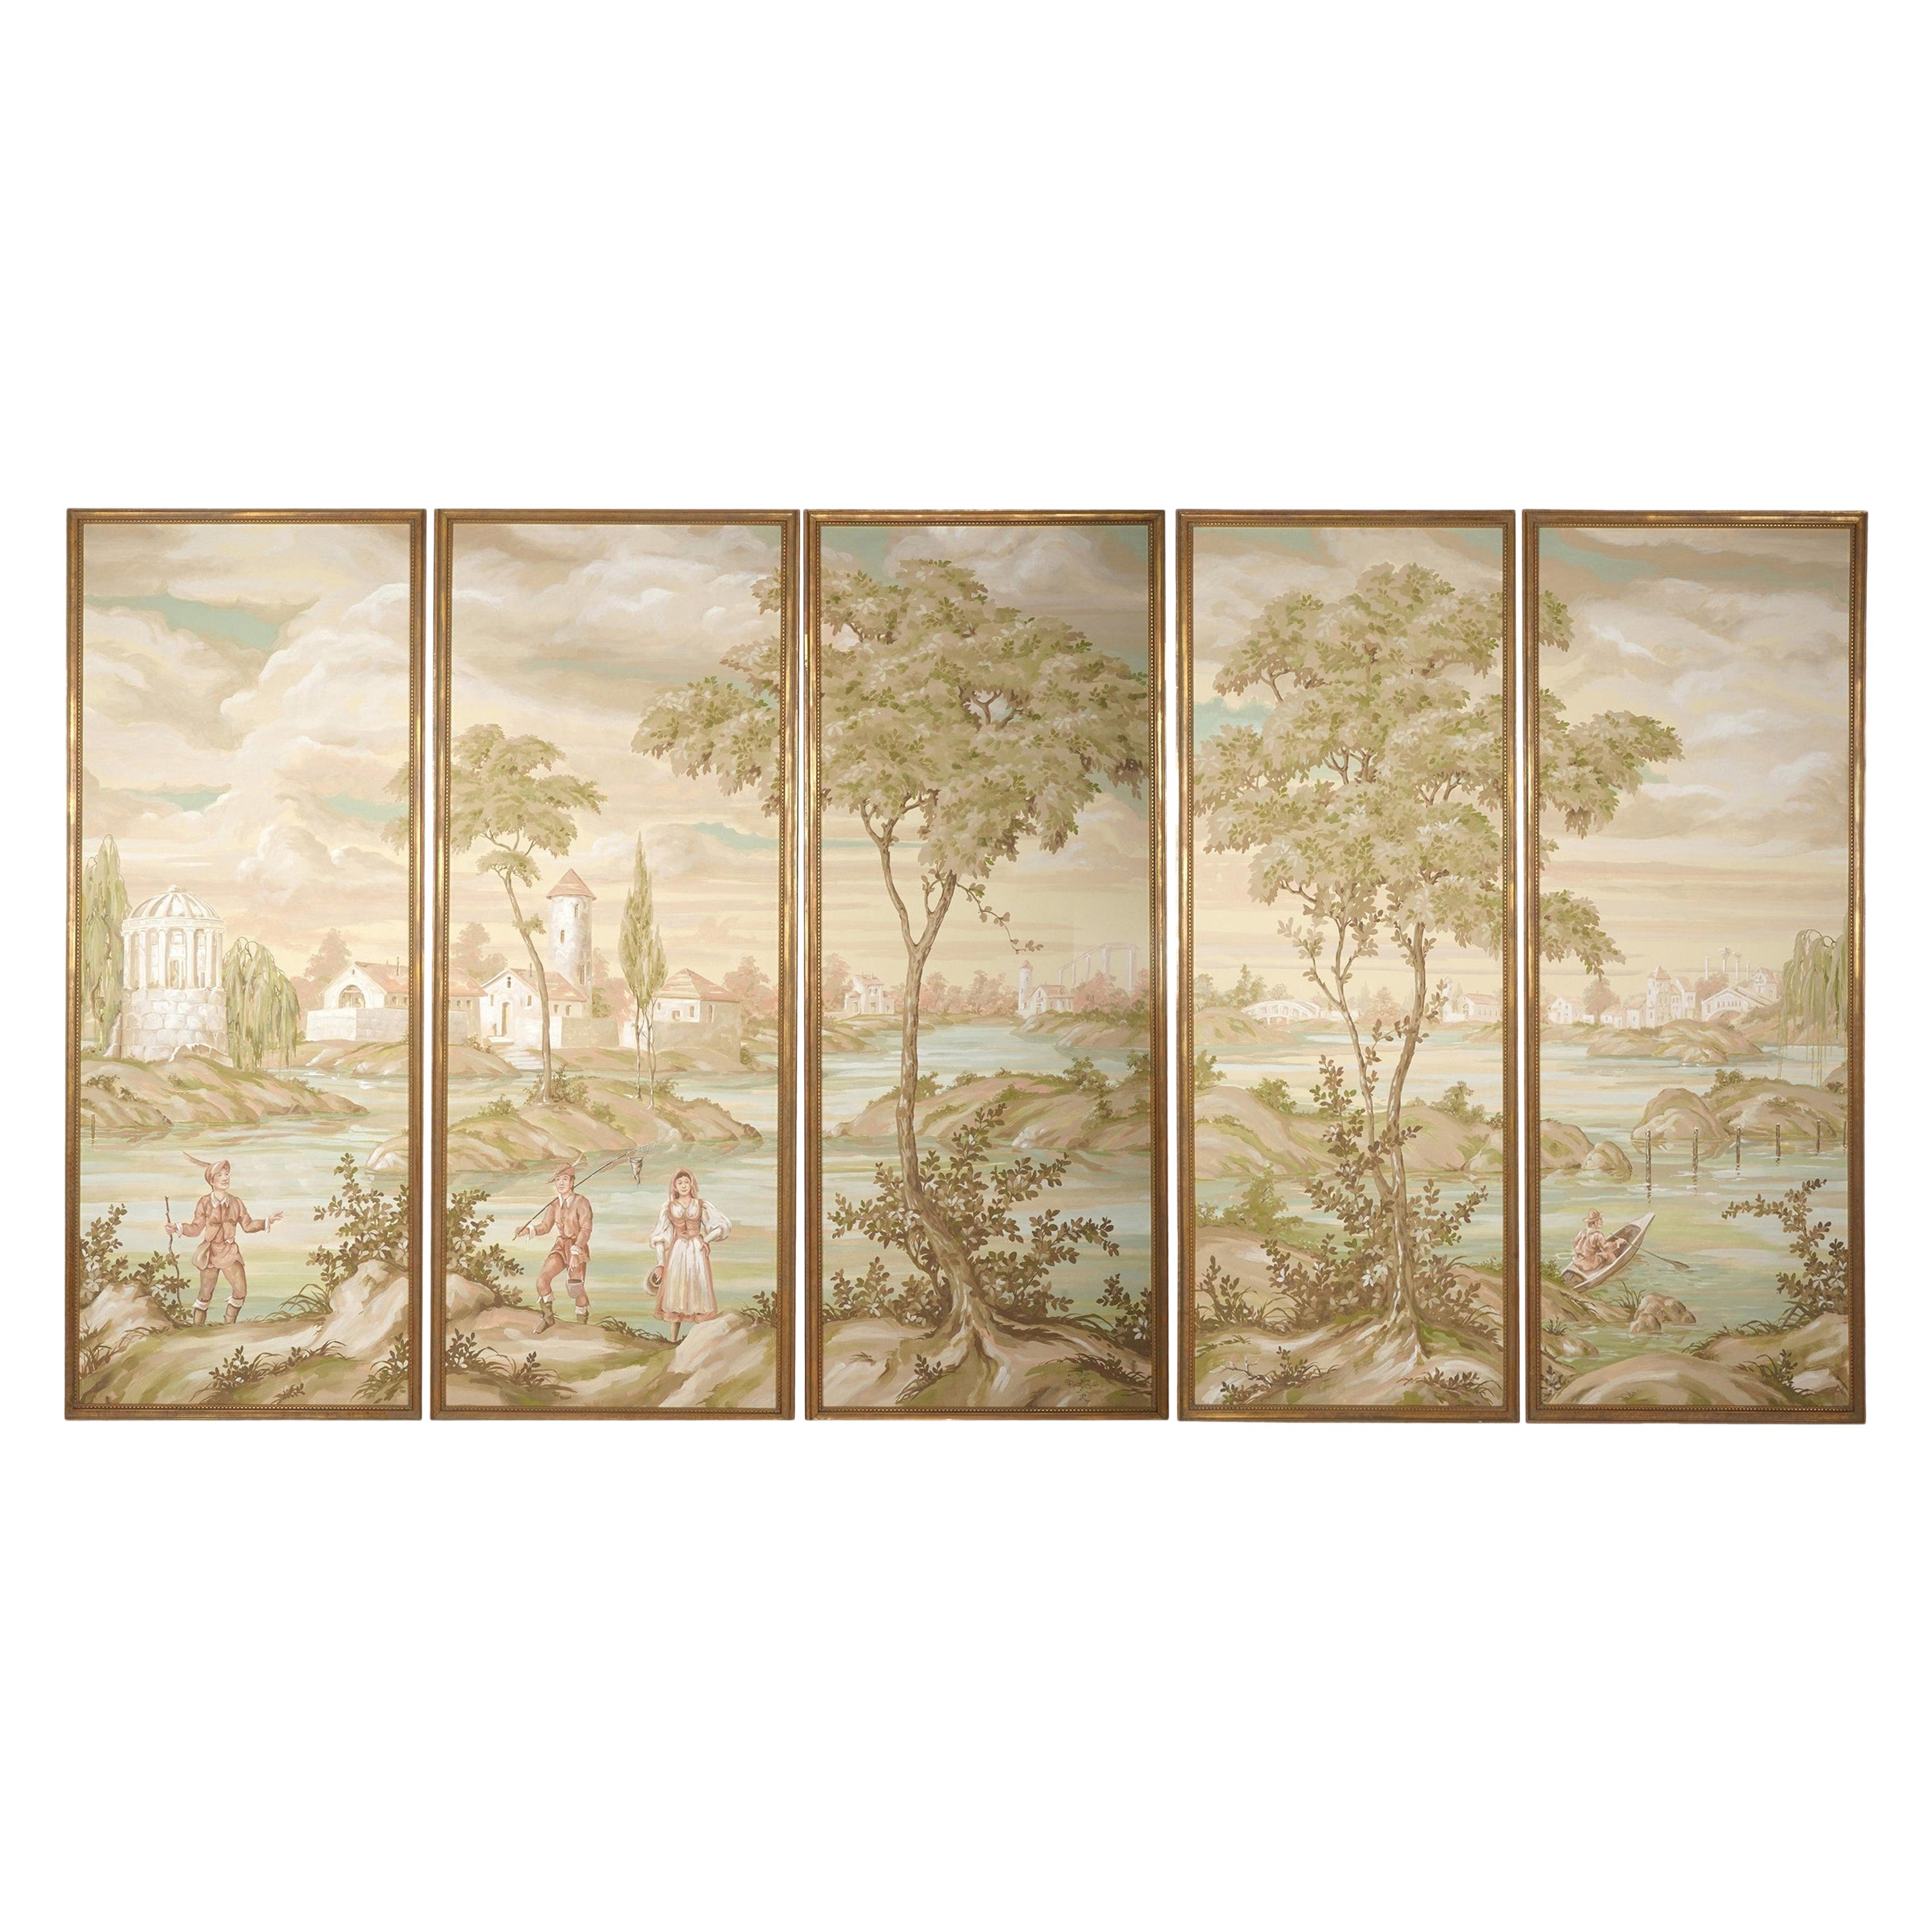 Großes japanisches Nihonga-Lascape Pastoral-Gemälde, signiert von Robert Crowder, 5 Tafeln